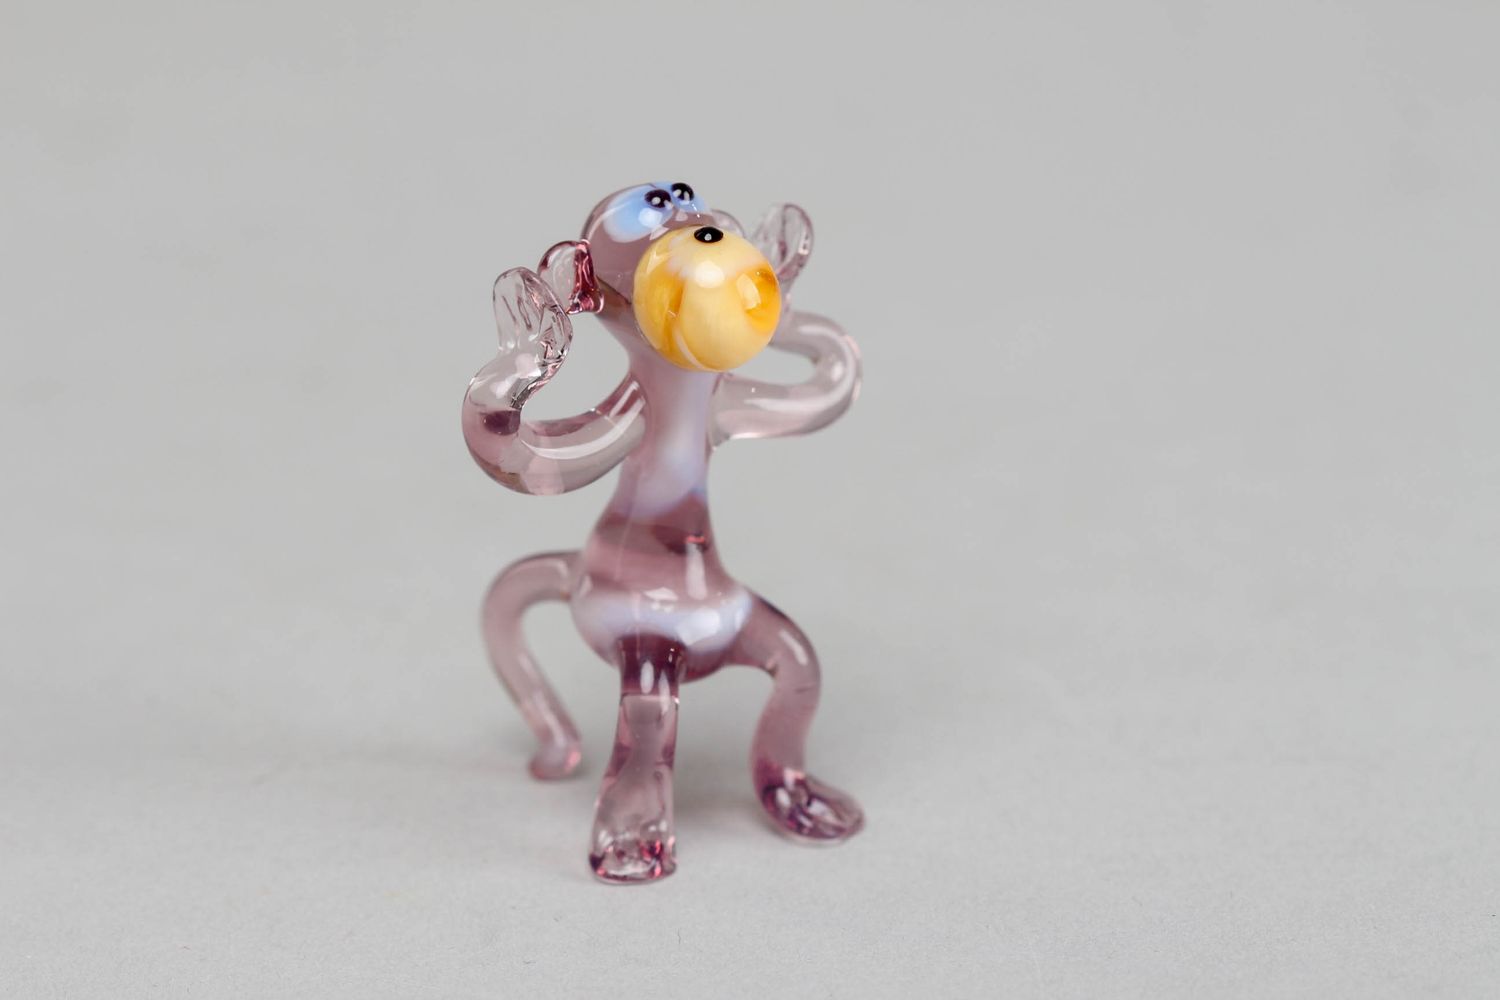 Стеклянная маленькая фигурка обезьянки ручной работы в технике лэмпворк фото 1